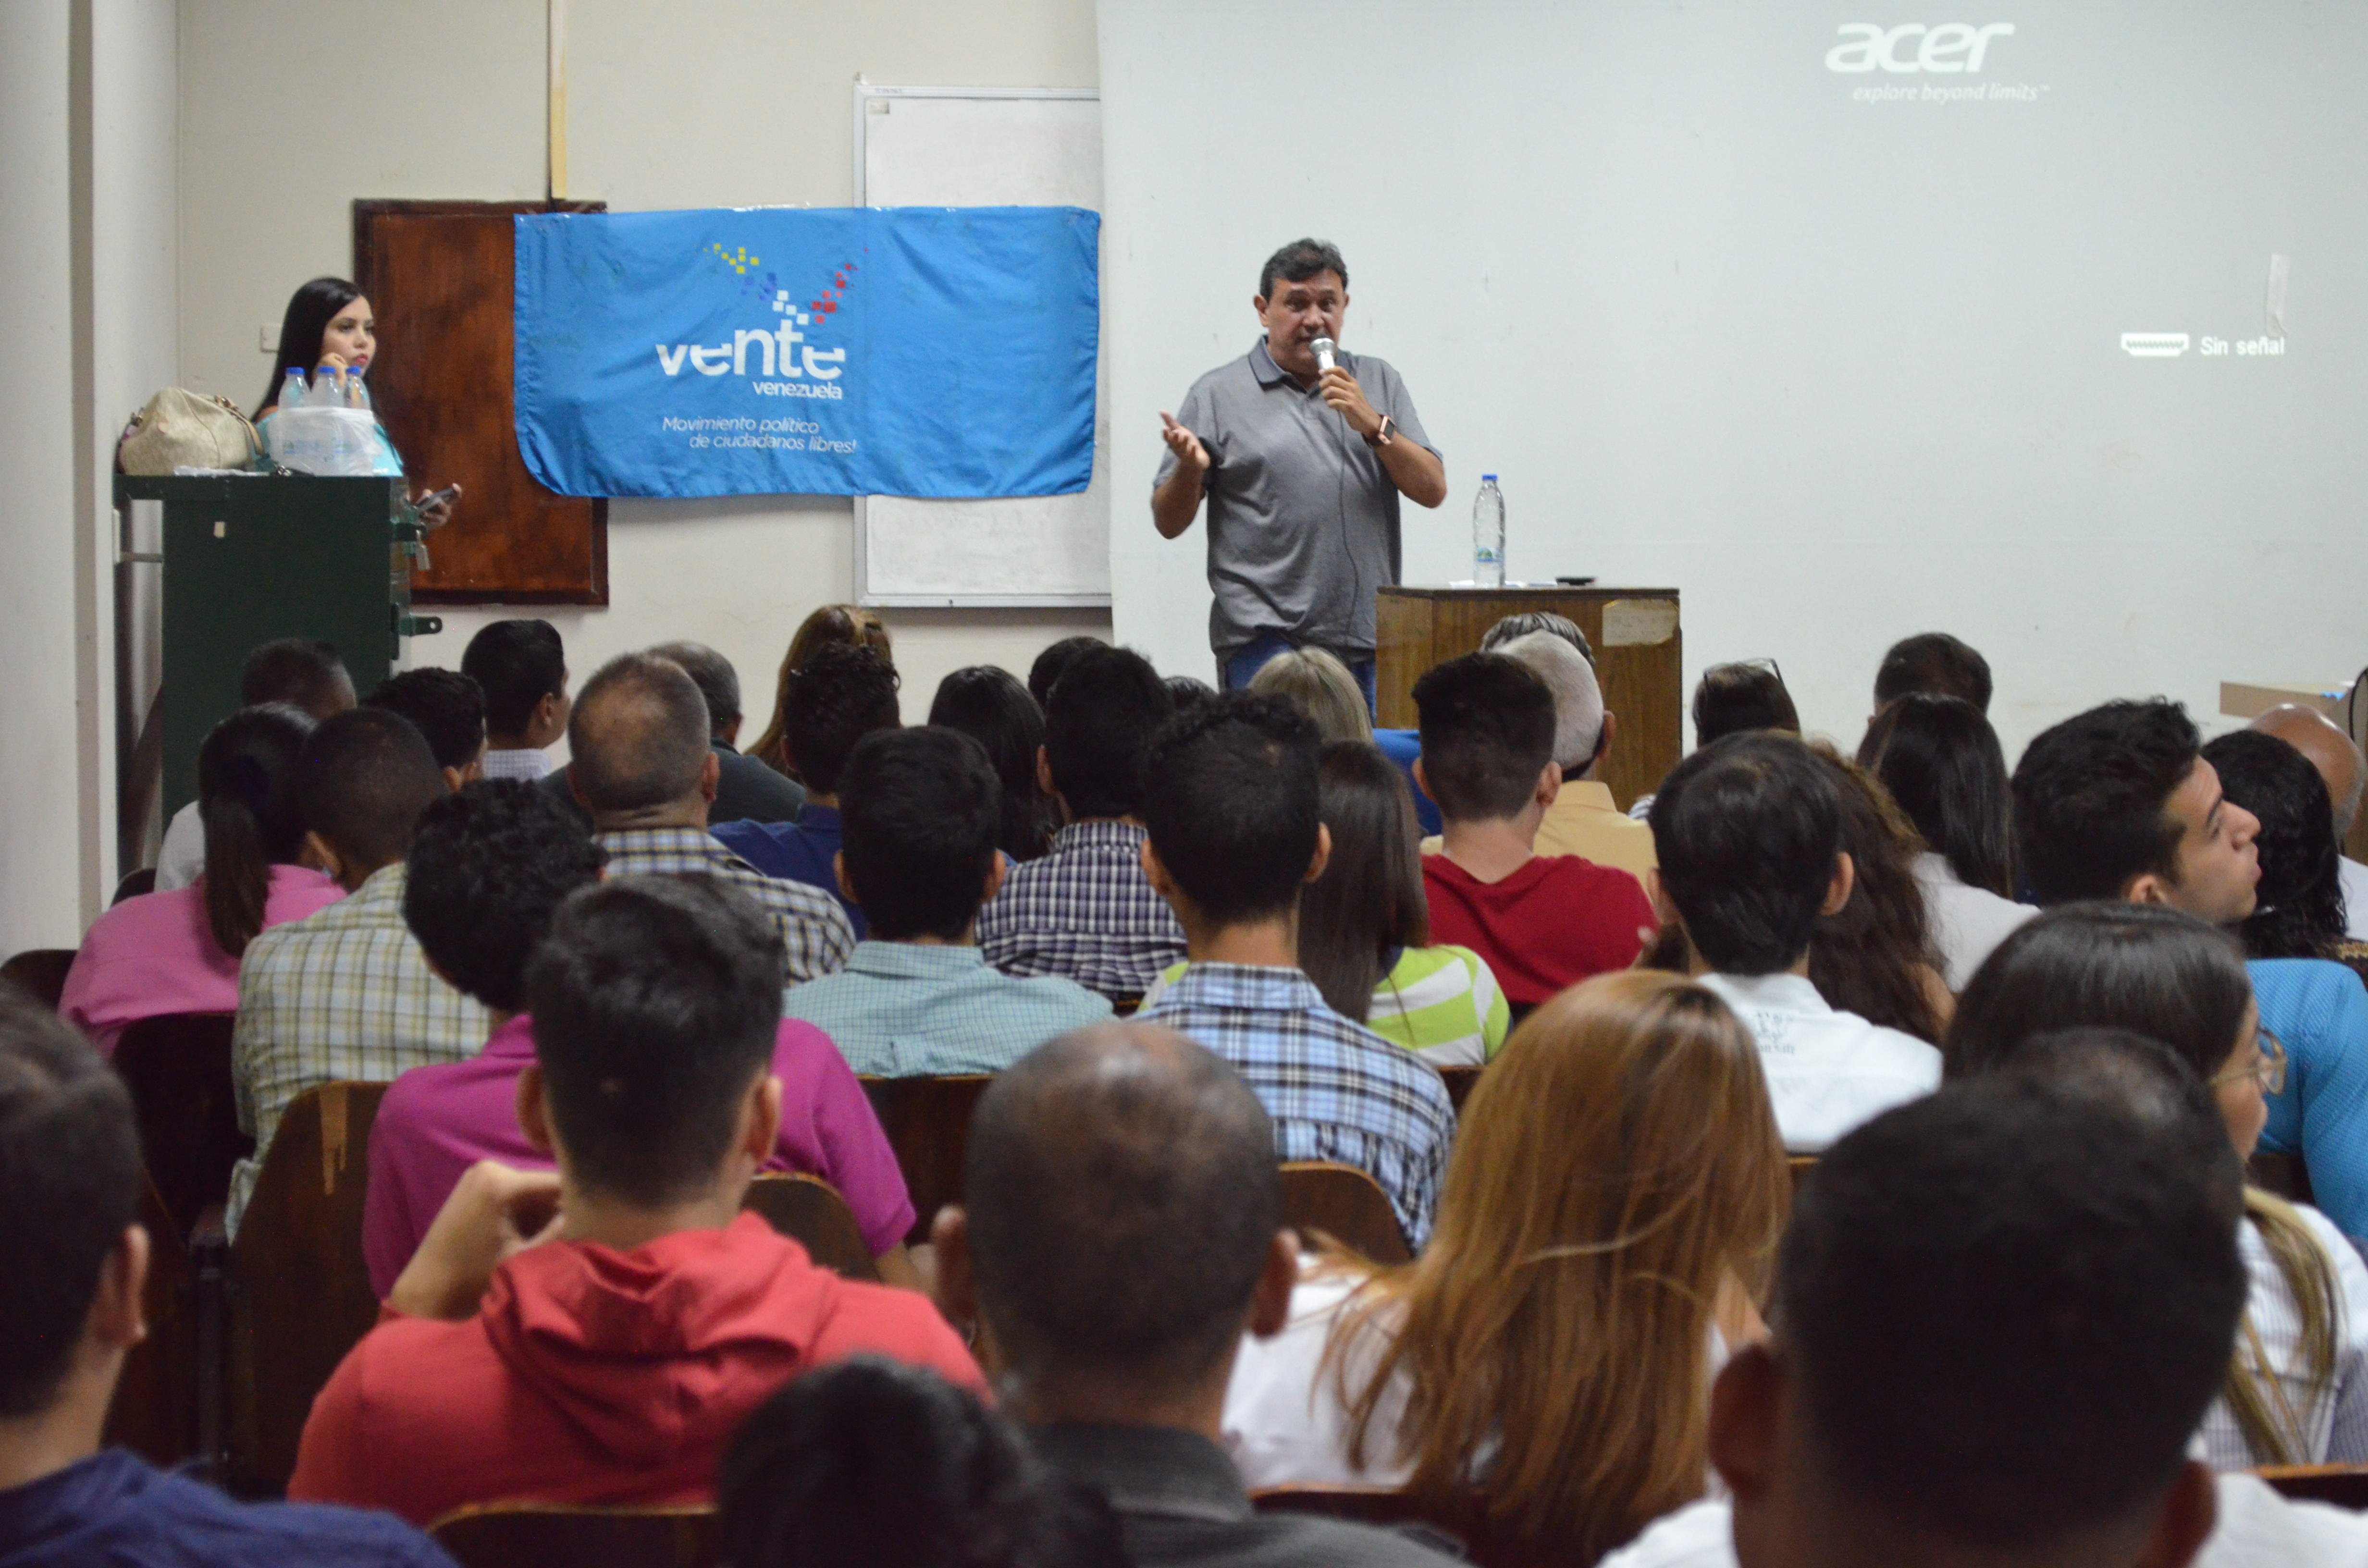 Vente Venezuela en Aragua realizó jornada de Pilares para debatir sobre las ideas que funcionan   